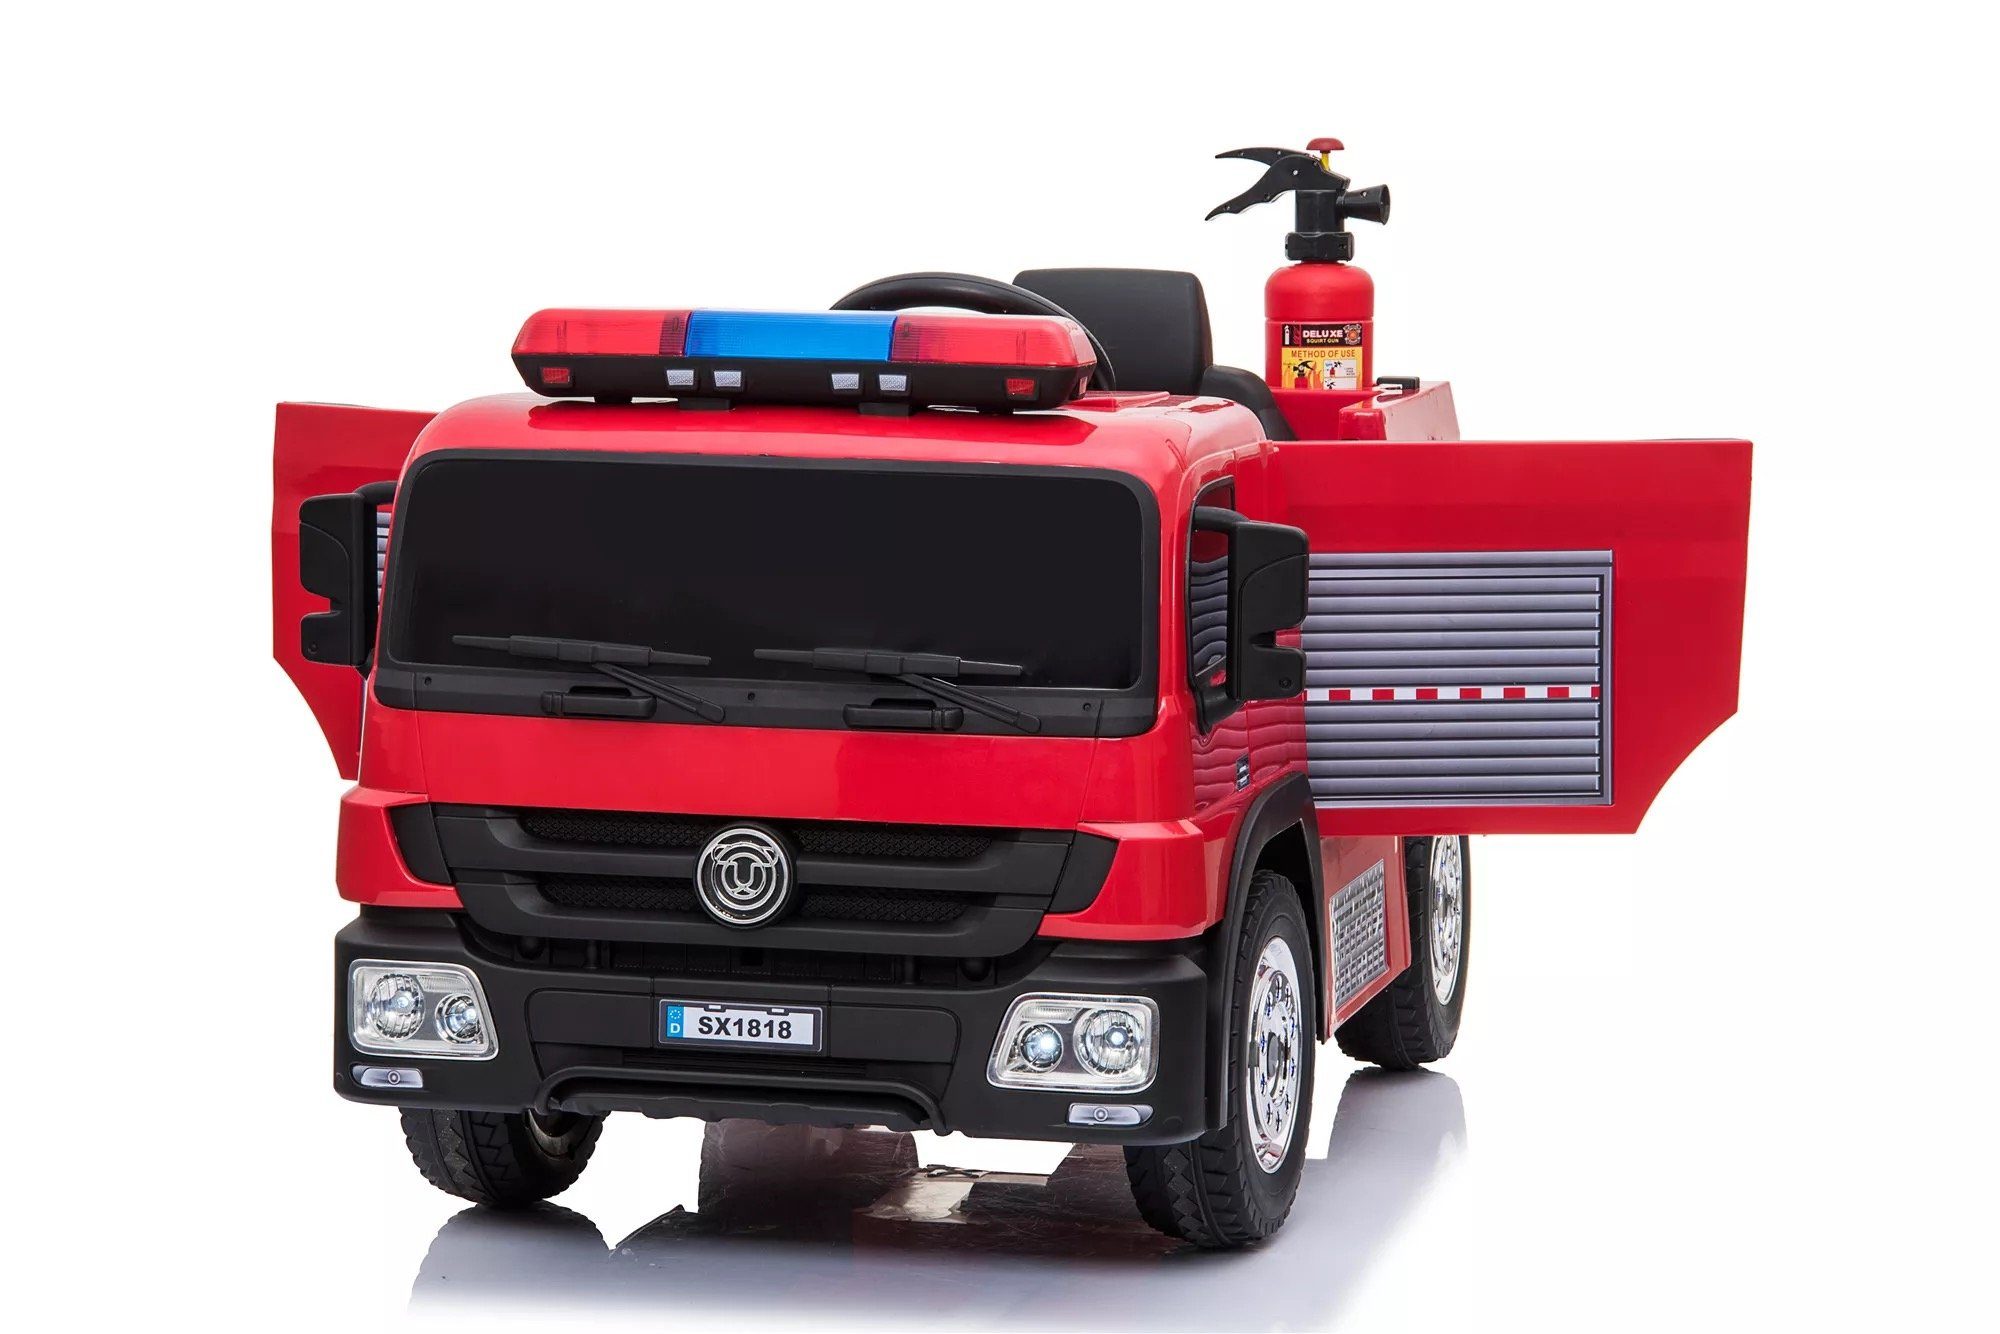 2x Kinder Spielzeug Feuerwehr Feuerwehrauto Auto LED Licht Sirene Selbstfahrend 